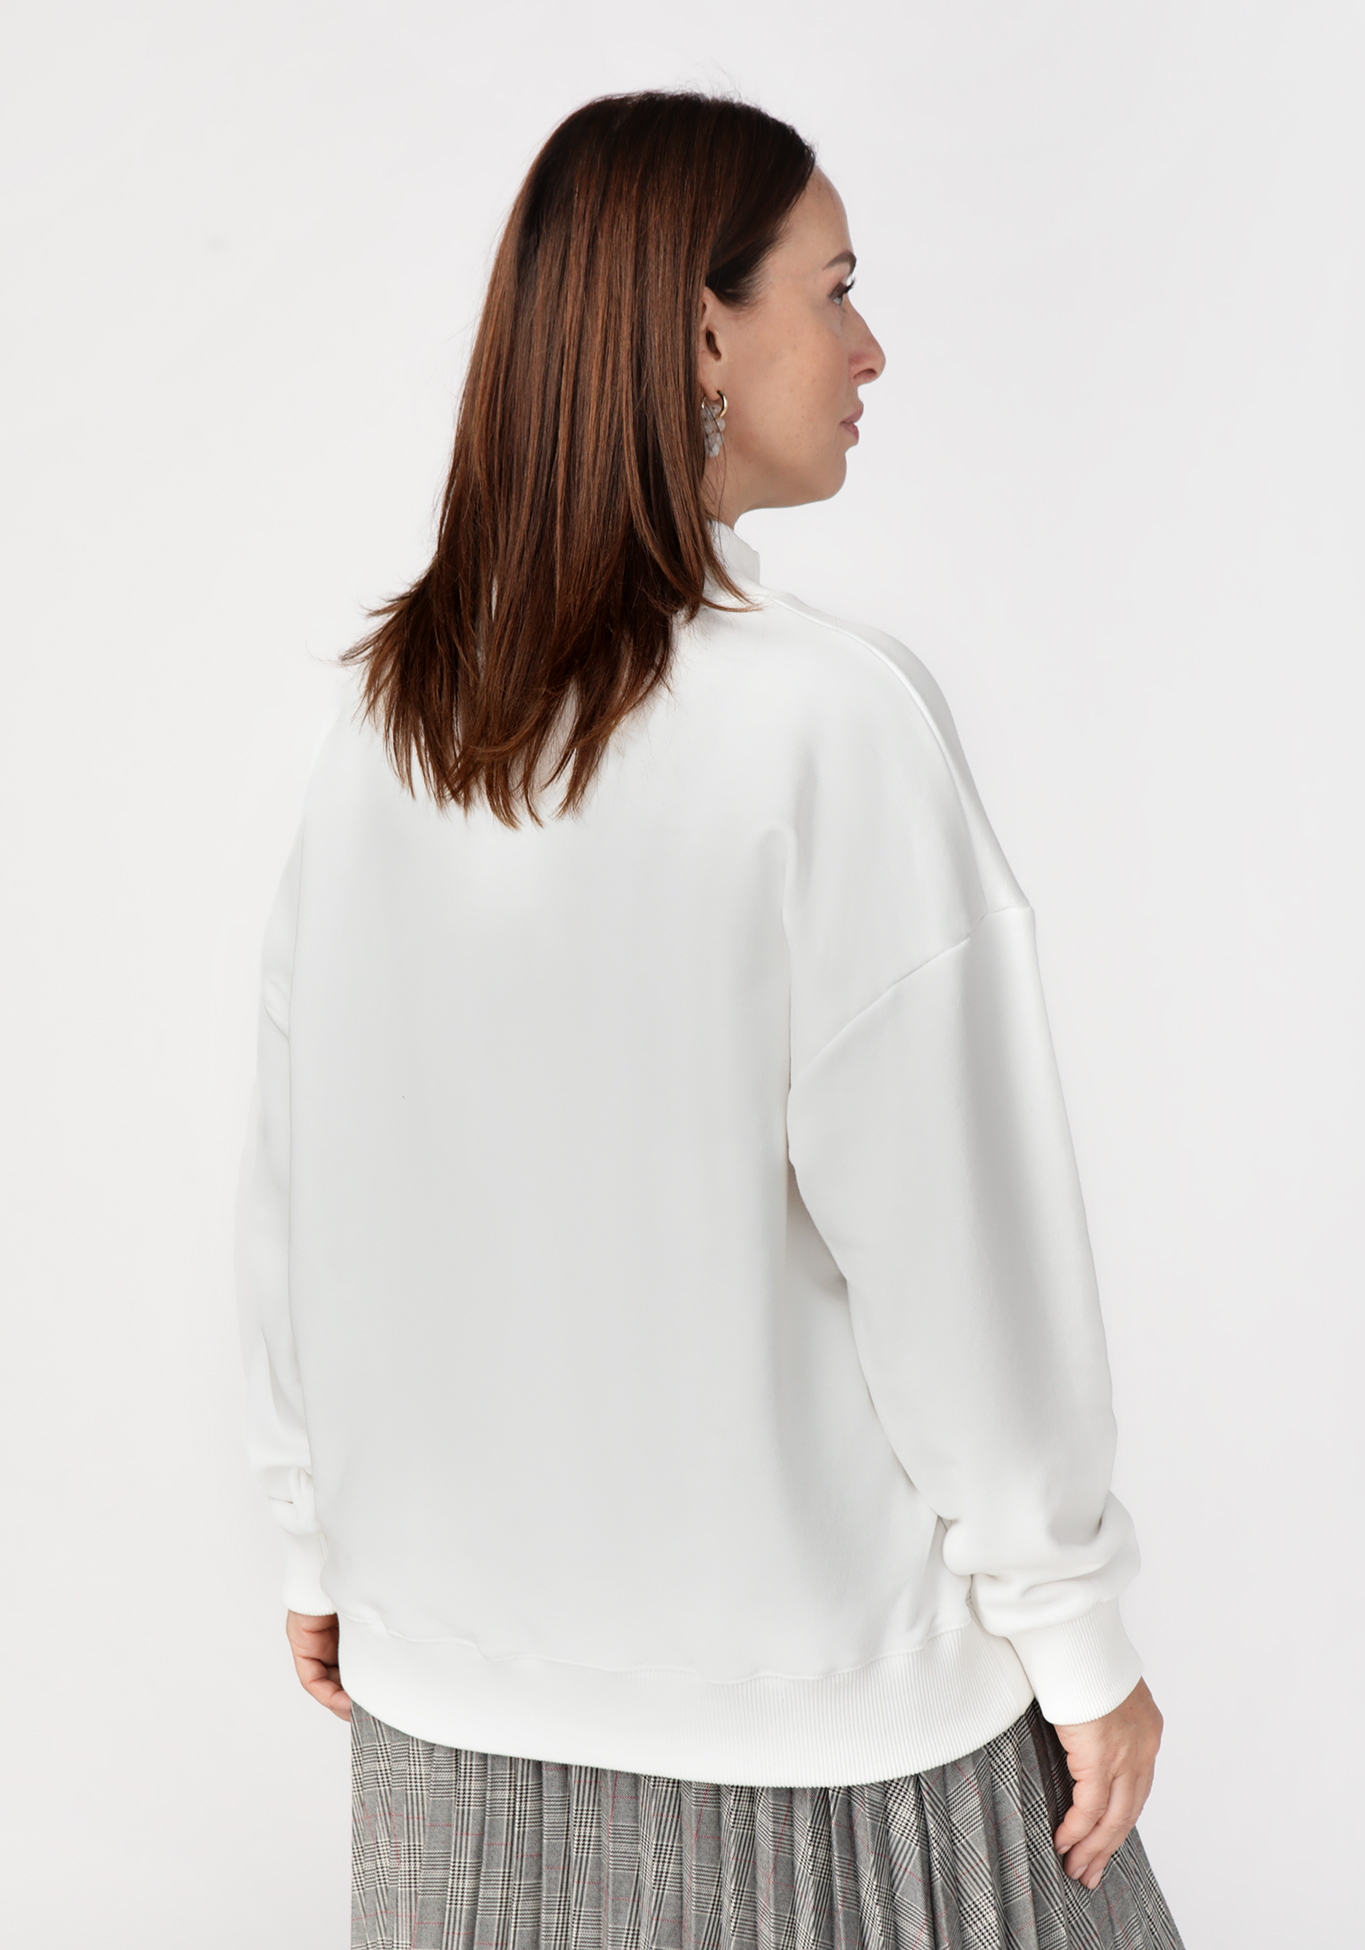 Свитшот с вышивкой Надежда Ангарская, размер 42, цвет сиреневый - фото 8